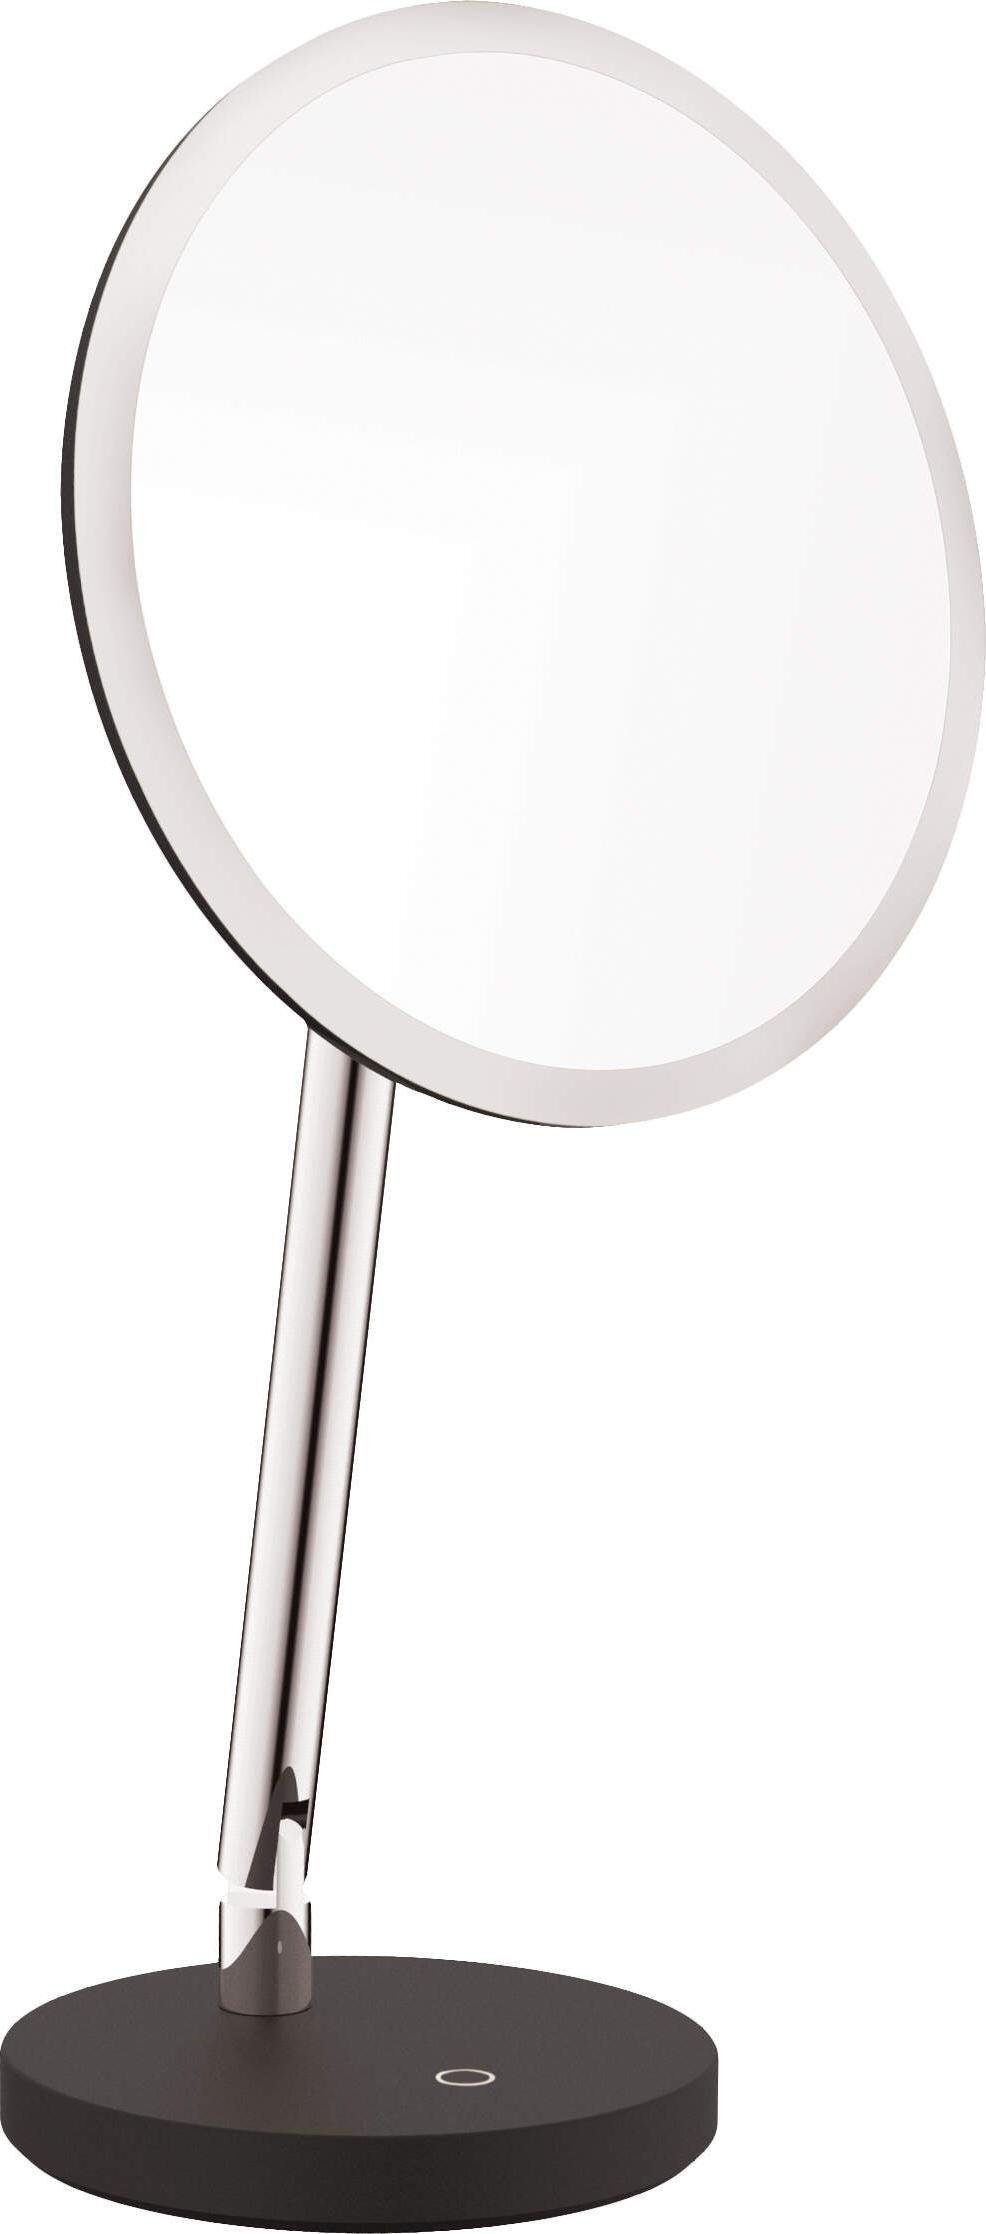 Oglinzi cosmetice -  Oglinda cosmetica in picioare - Iluminare LED din spate